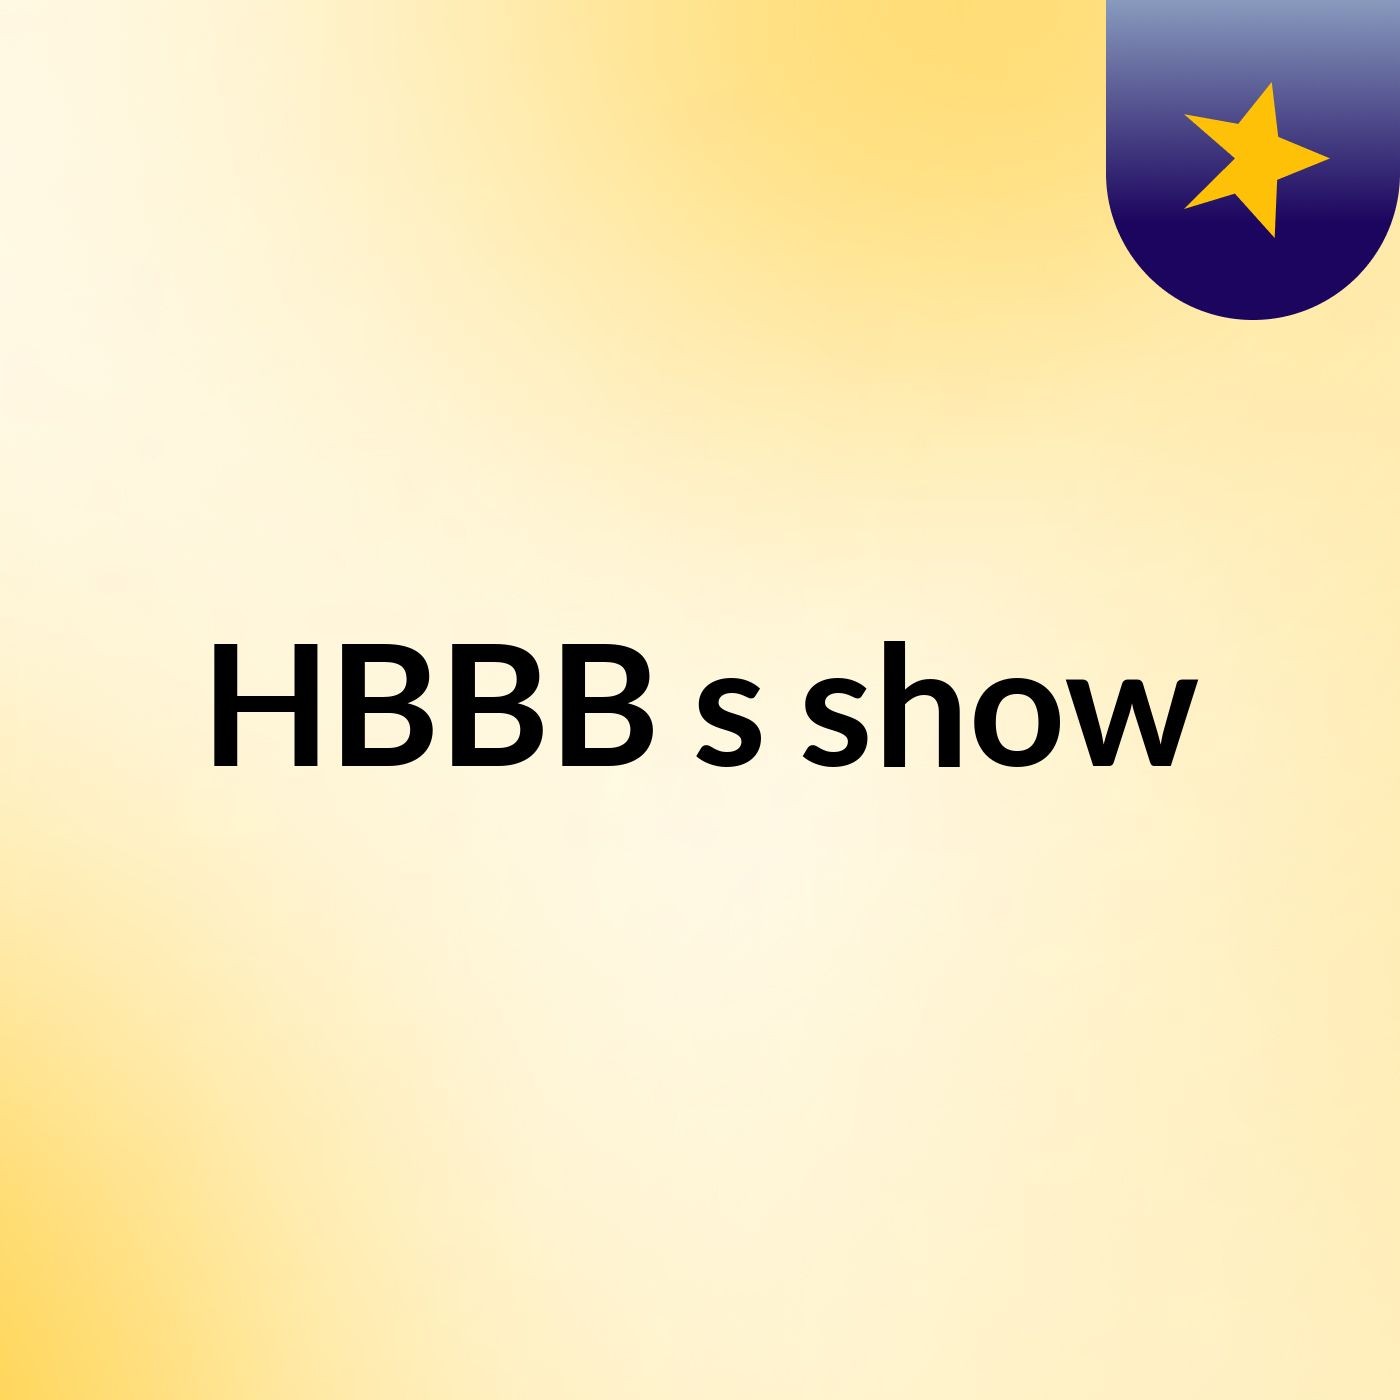 HBBB's show